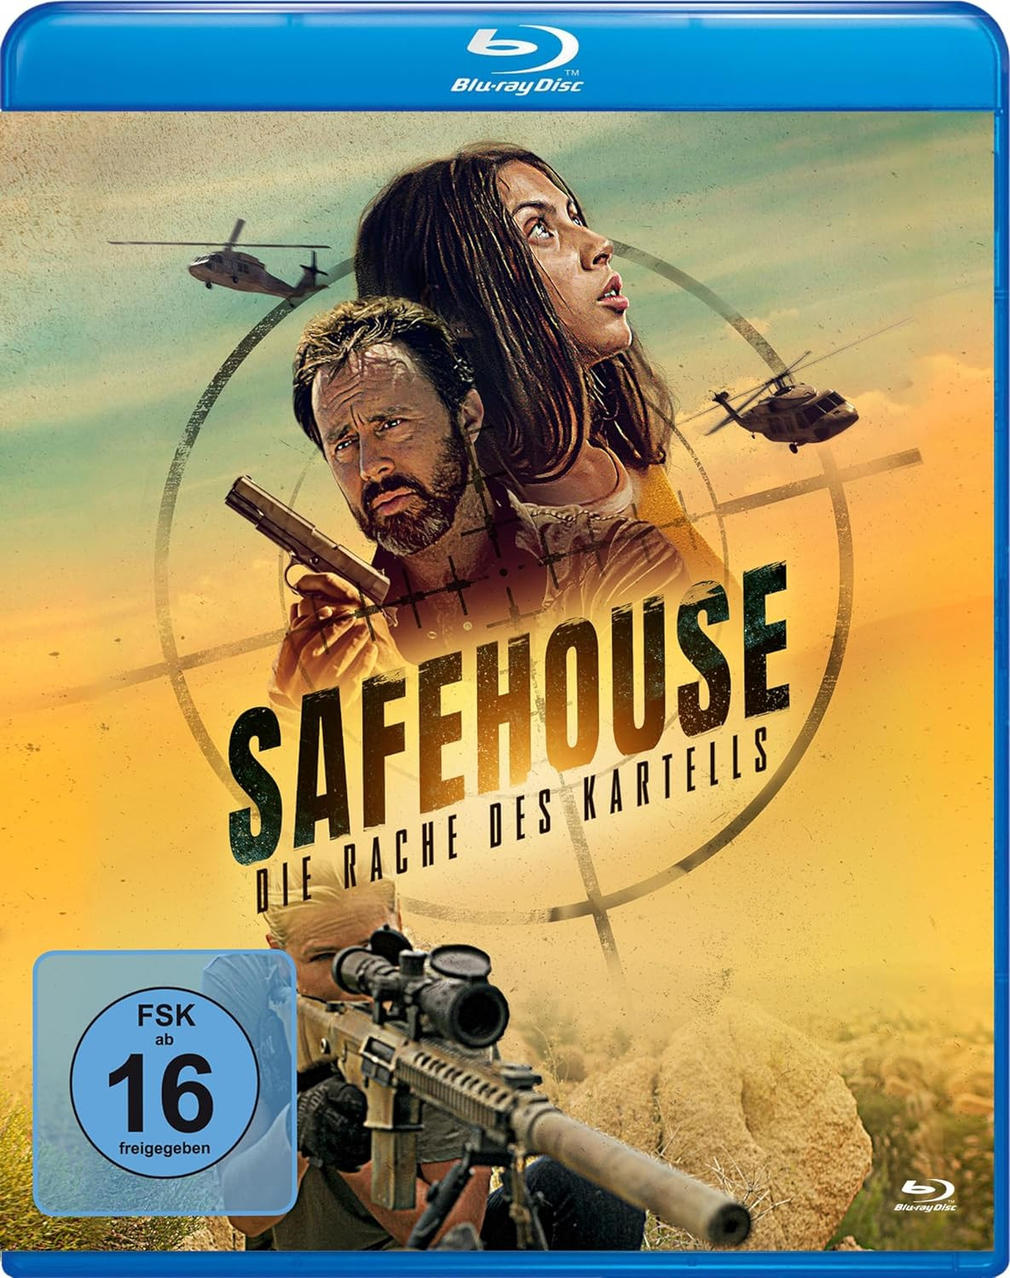 Safehouse - Die Kartells Blu-ray Rache des